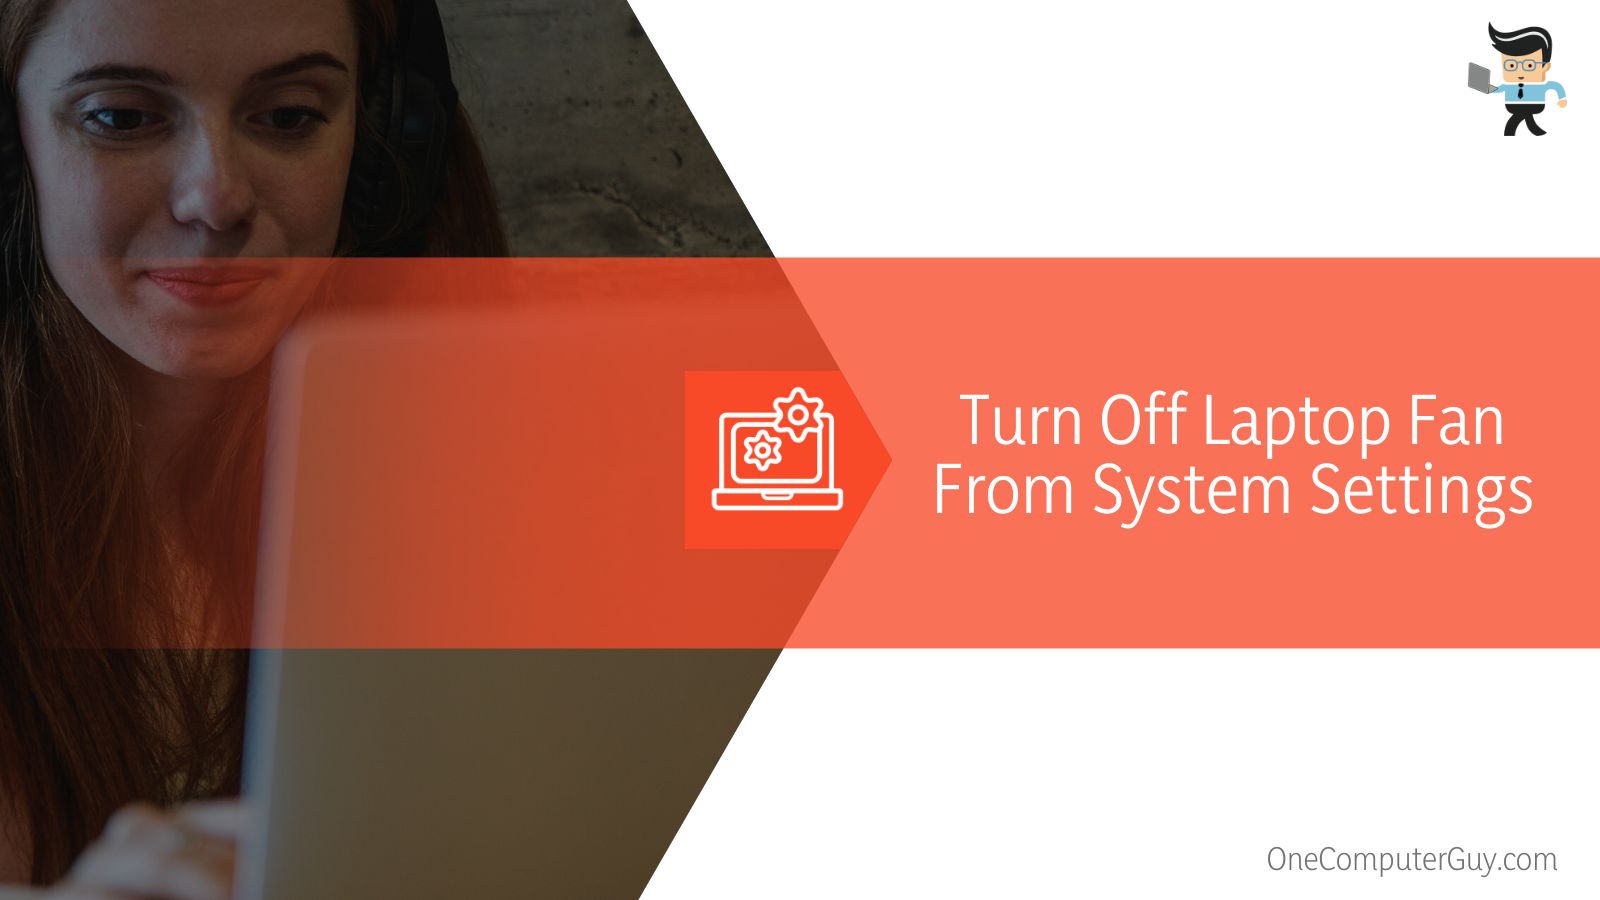 Turn Off Laptop Fan From System Settings